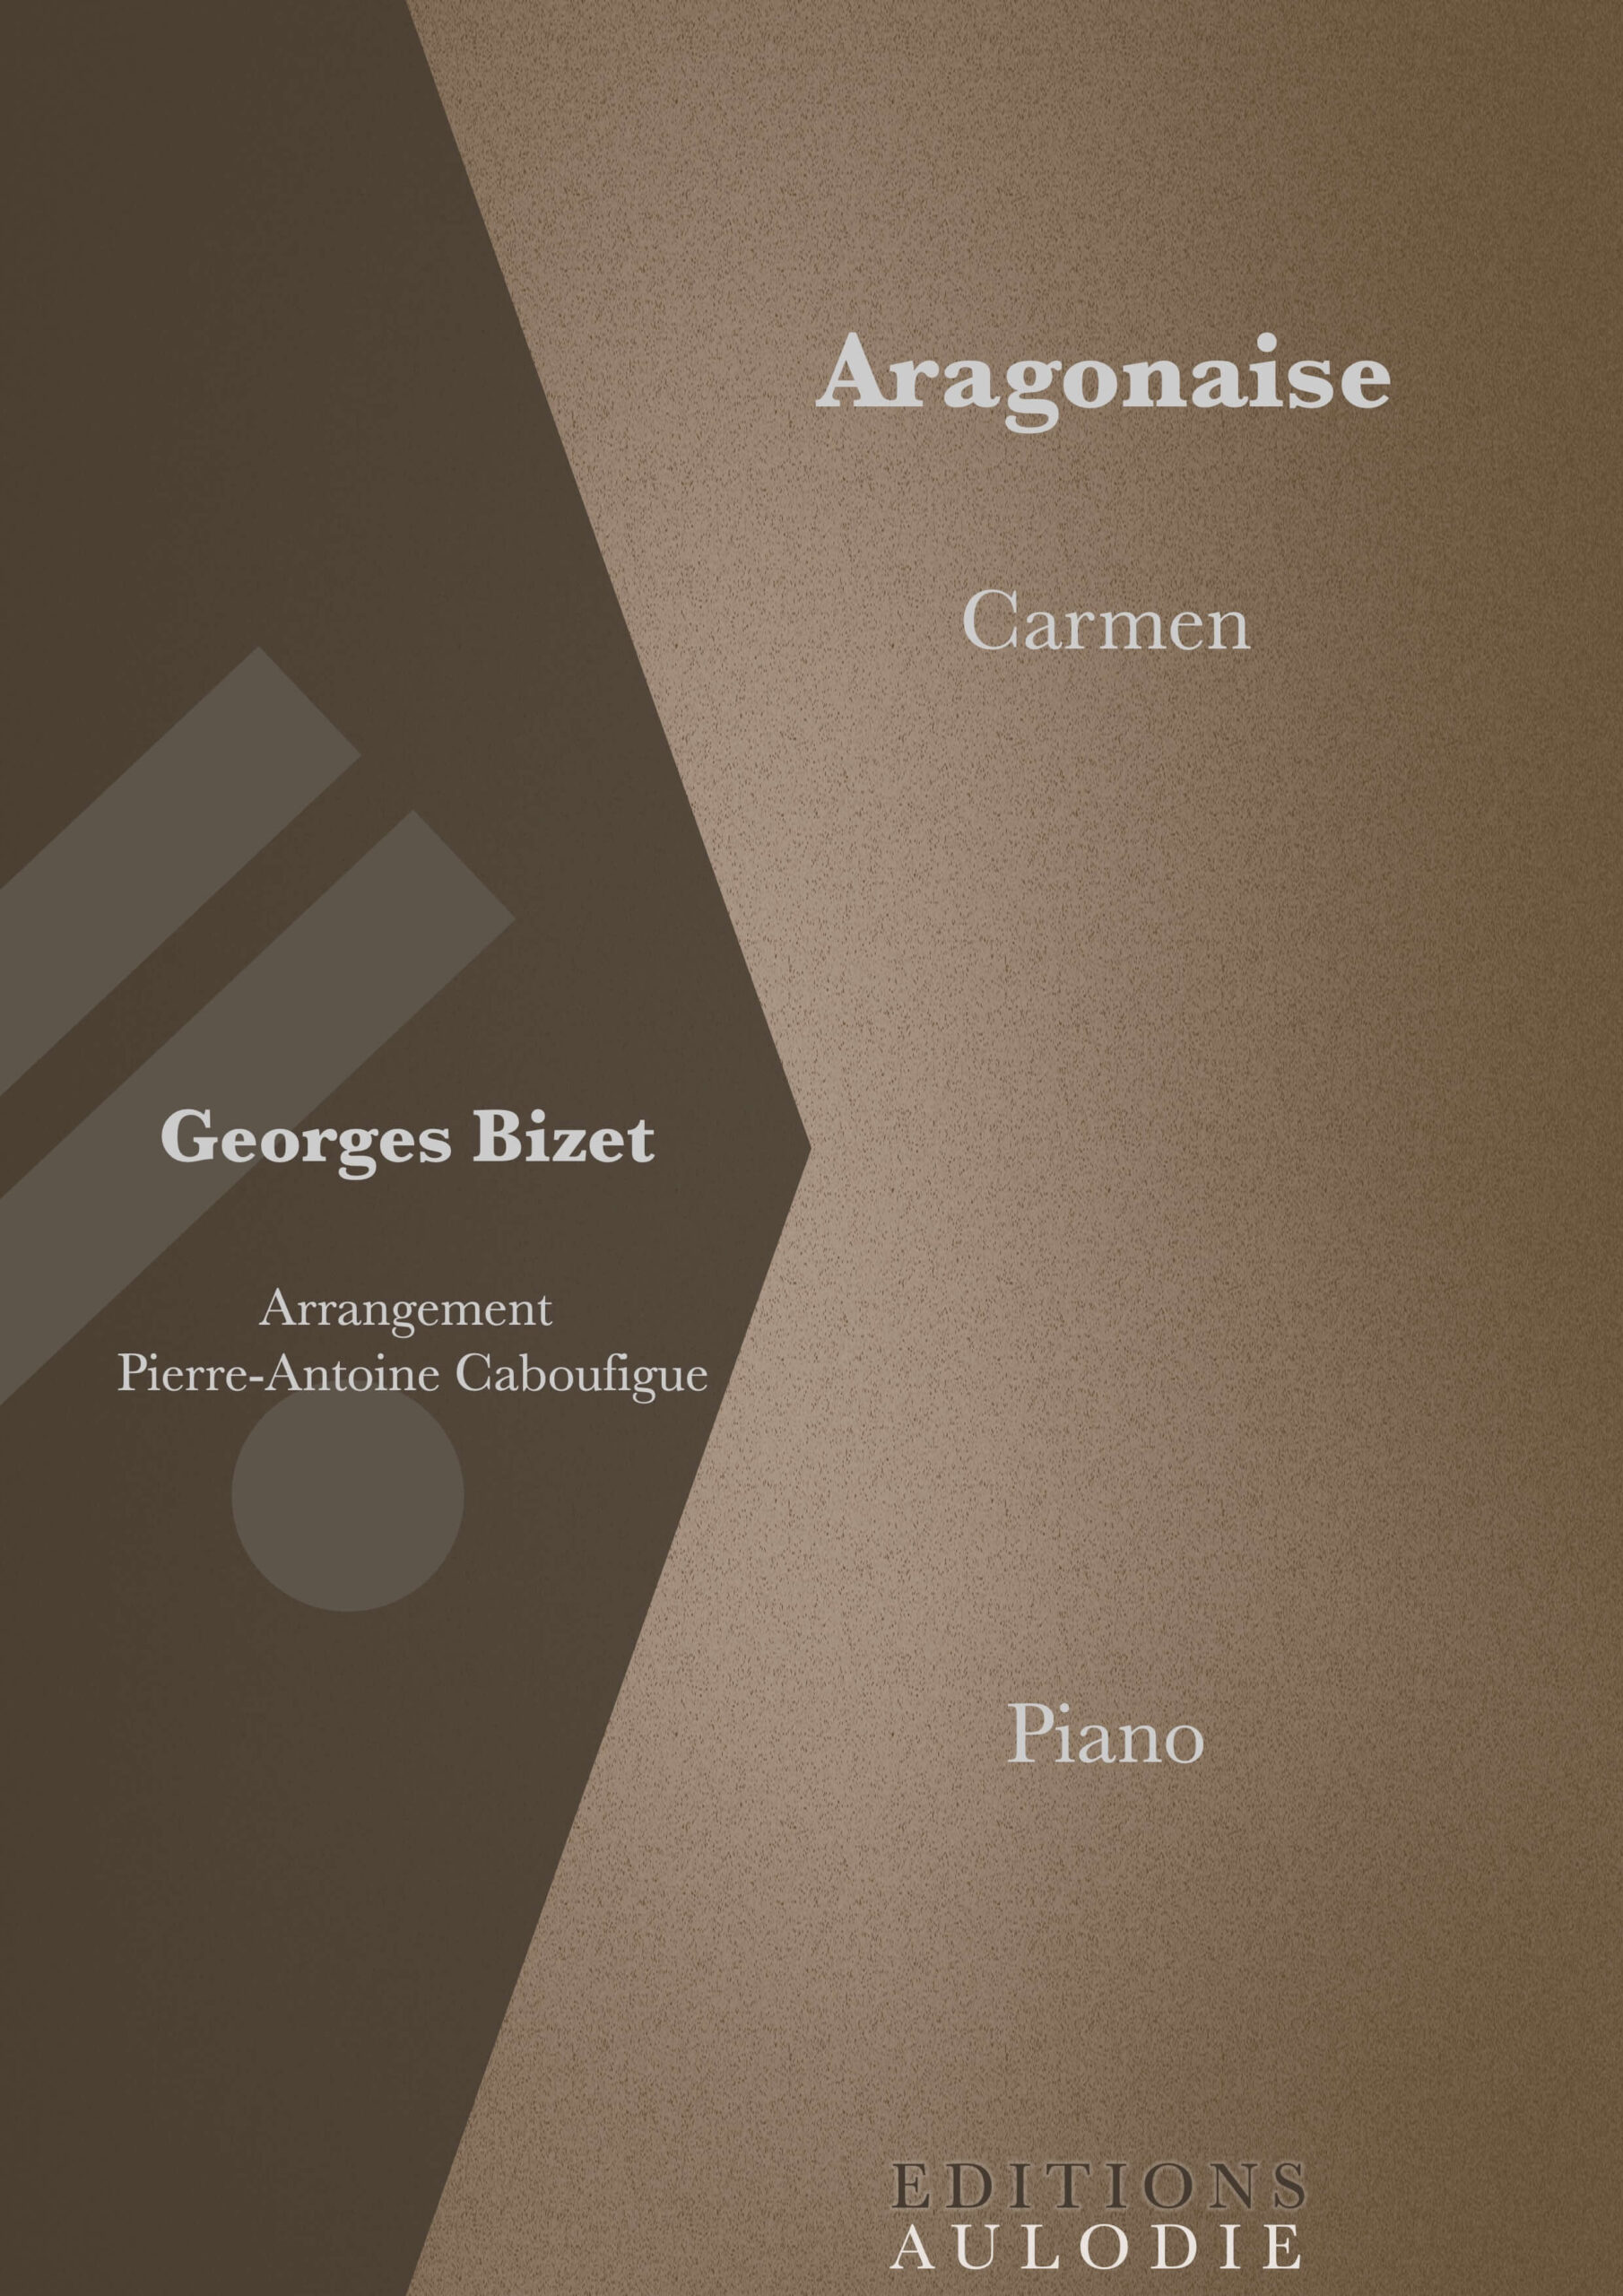 EA01044-Aragonaise-Carmen-Georges_Bizet-Solo